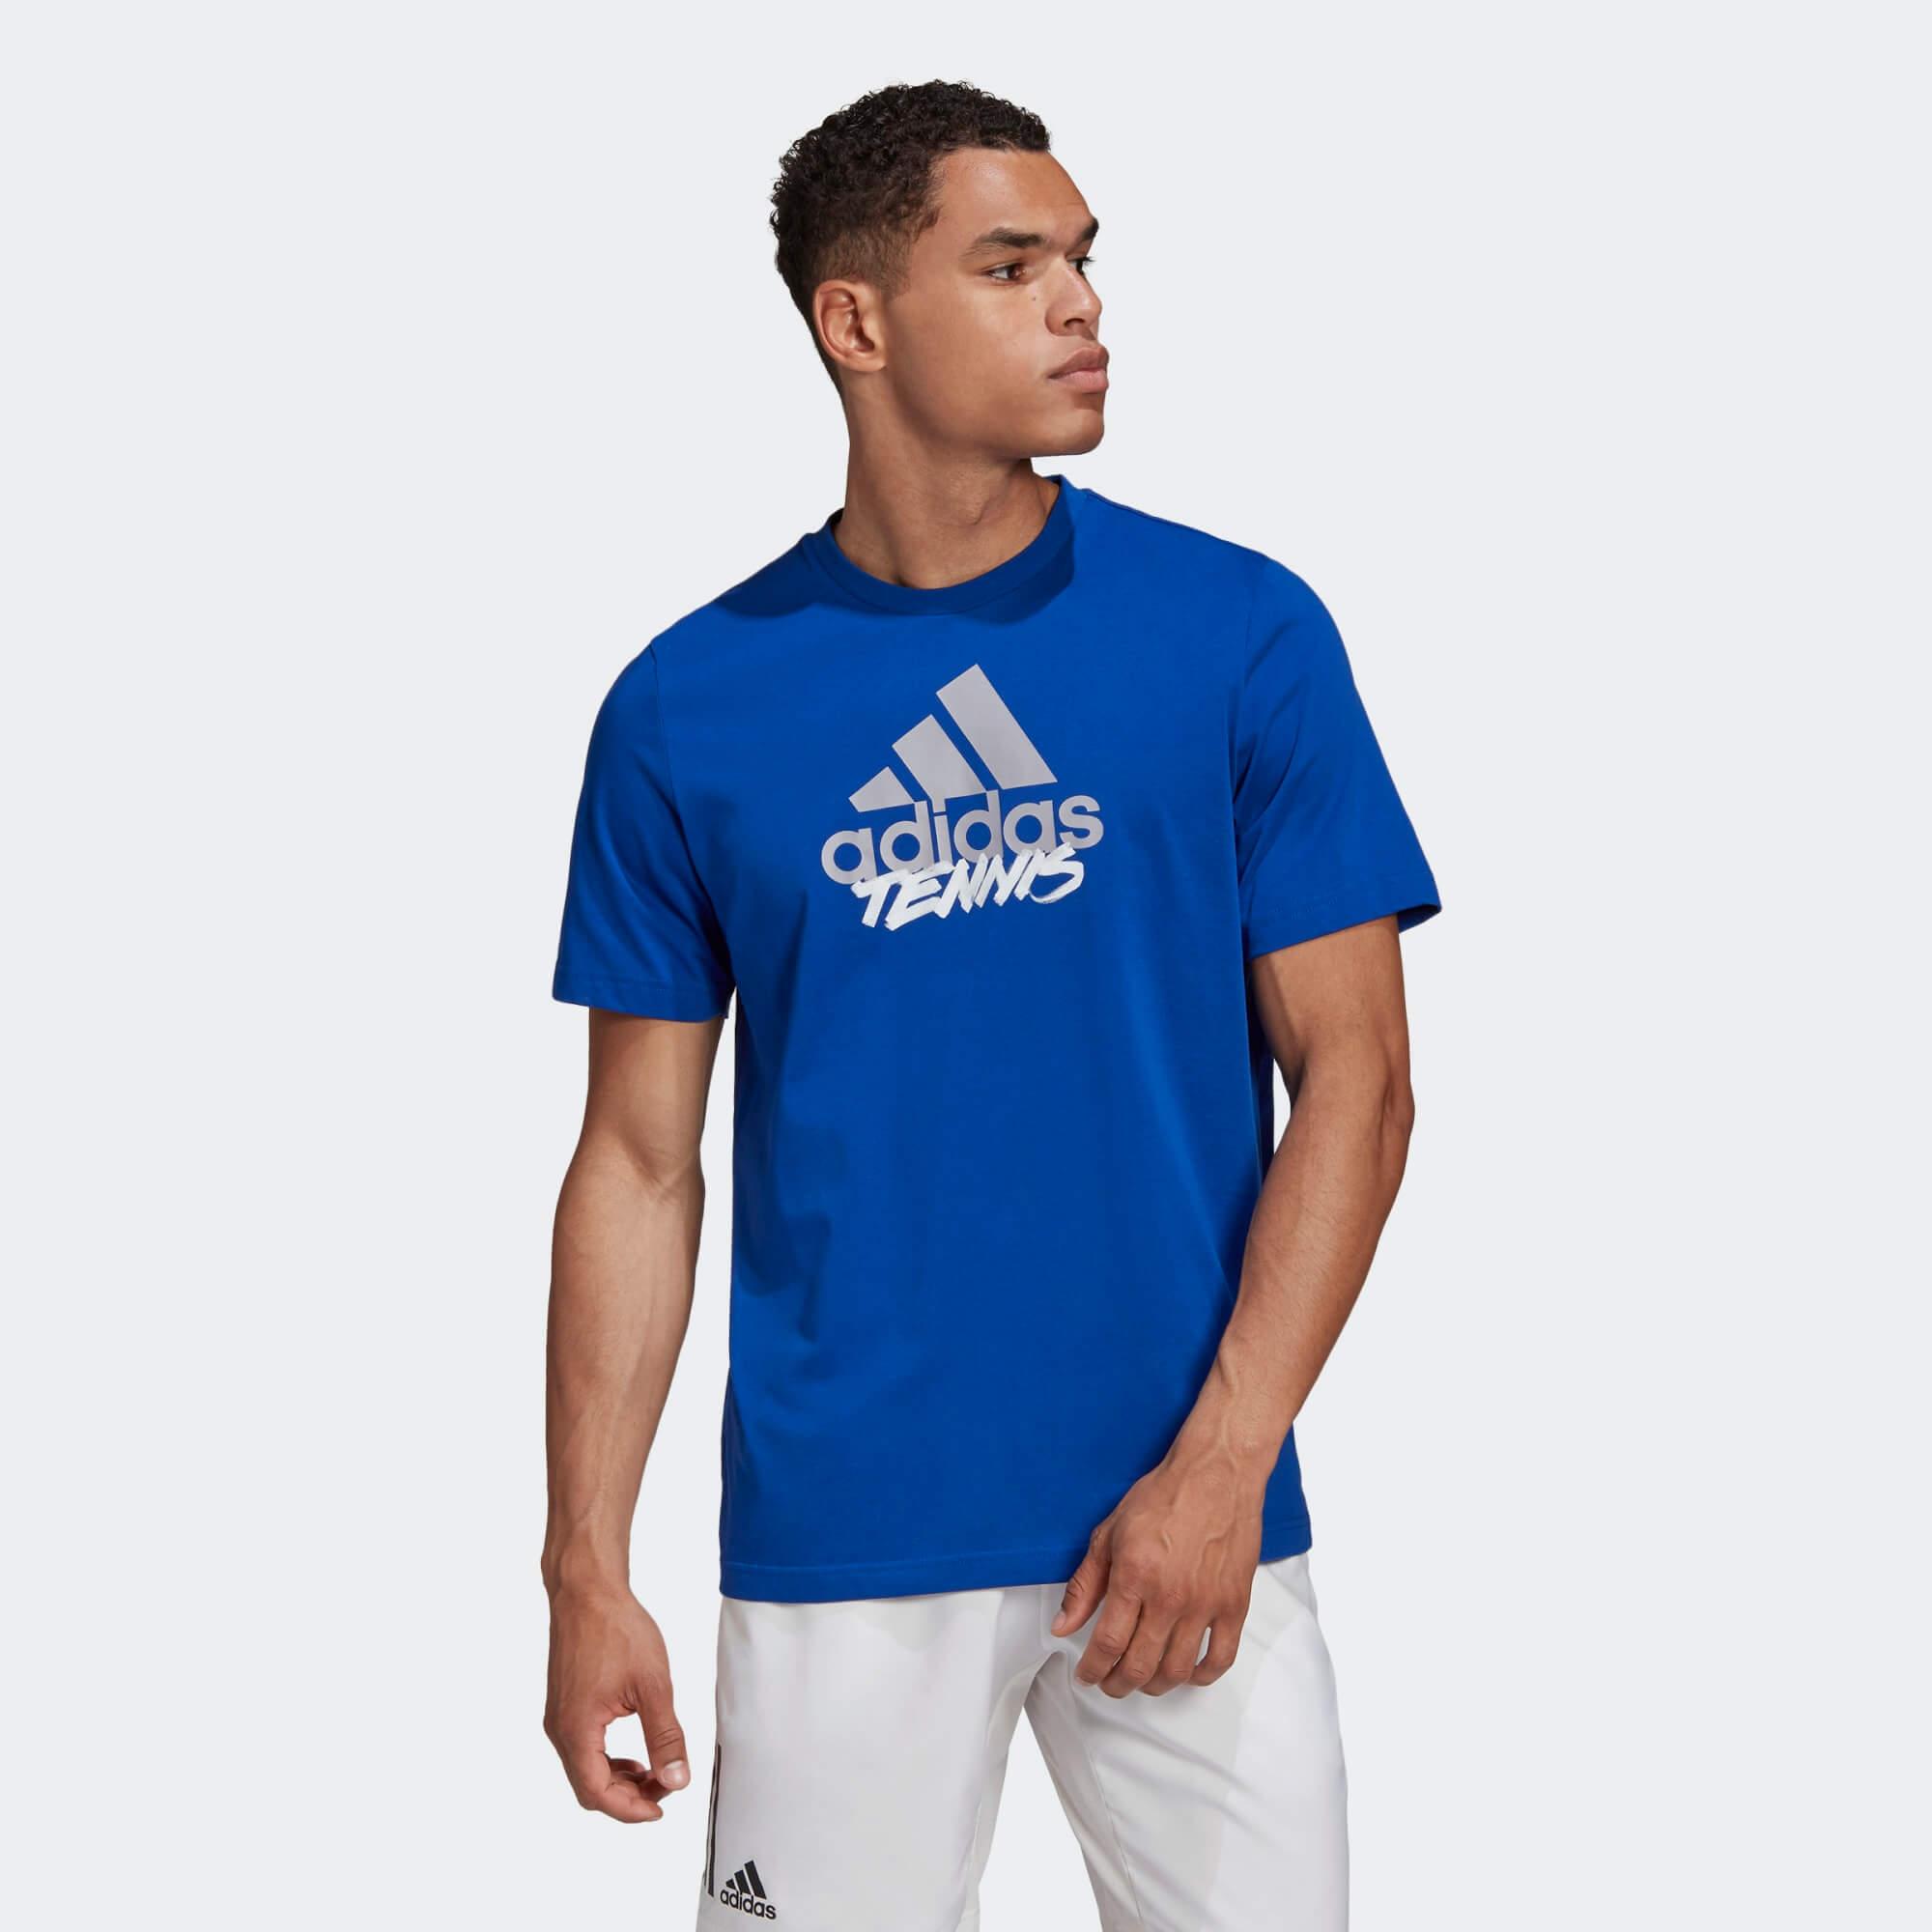 Adidas Mens Tennis Graphic Logo T-Shirt - Royal Blue - Tennisnuts.com